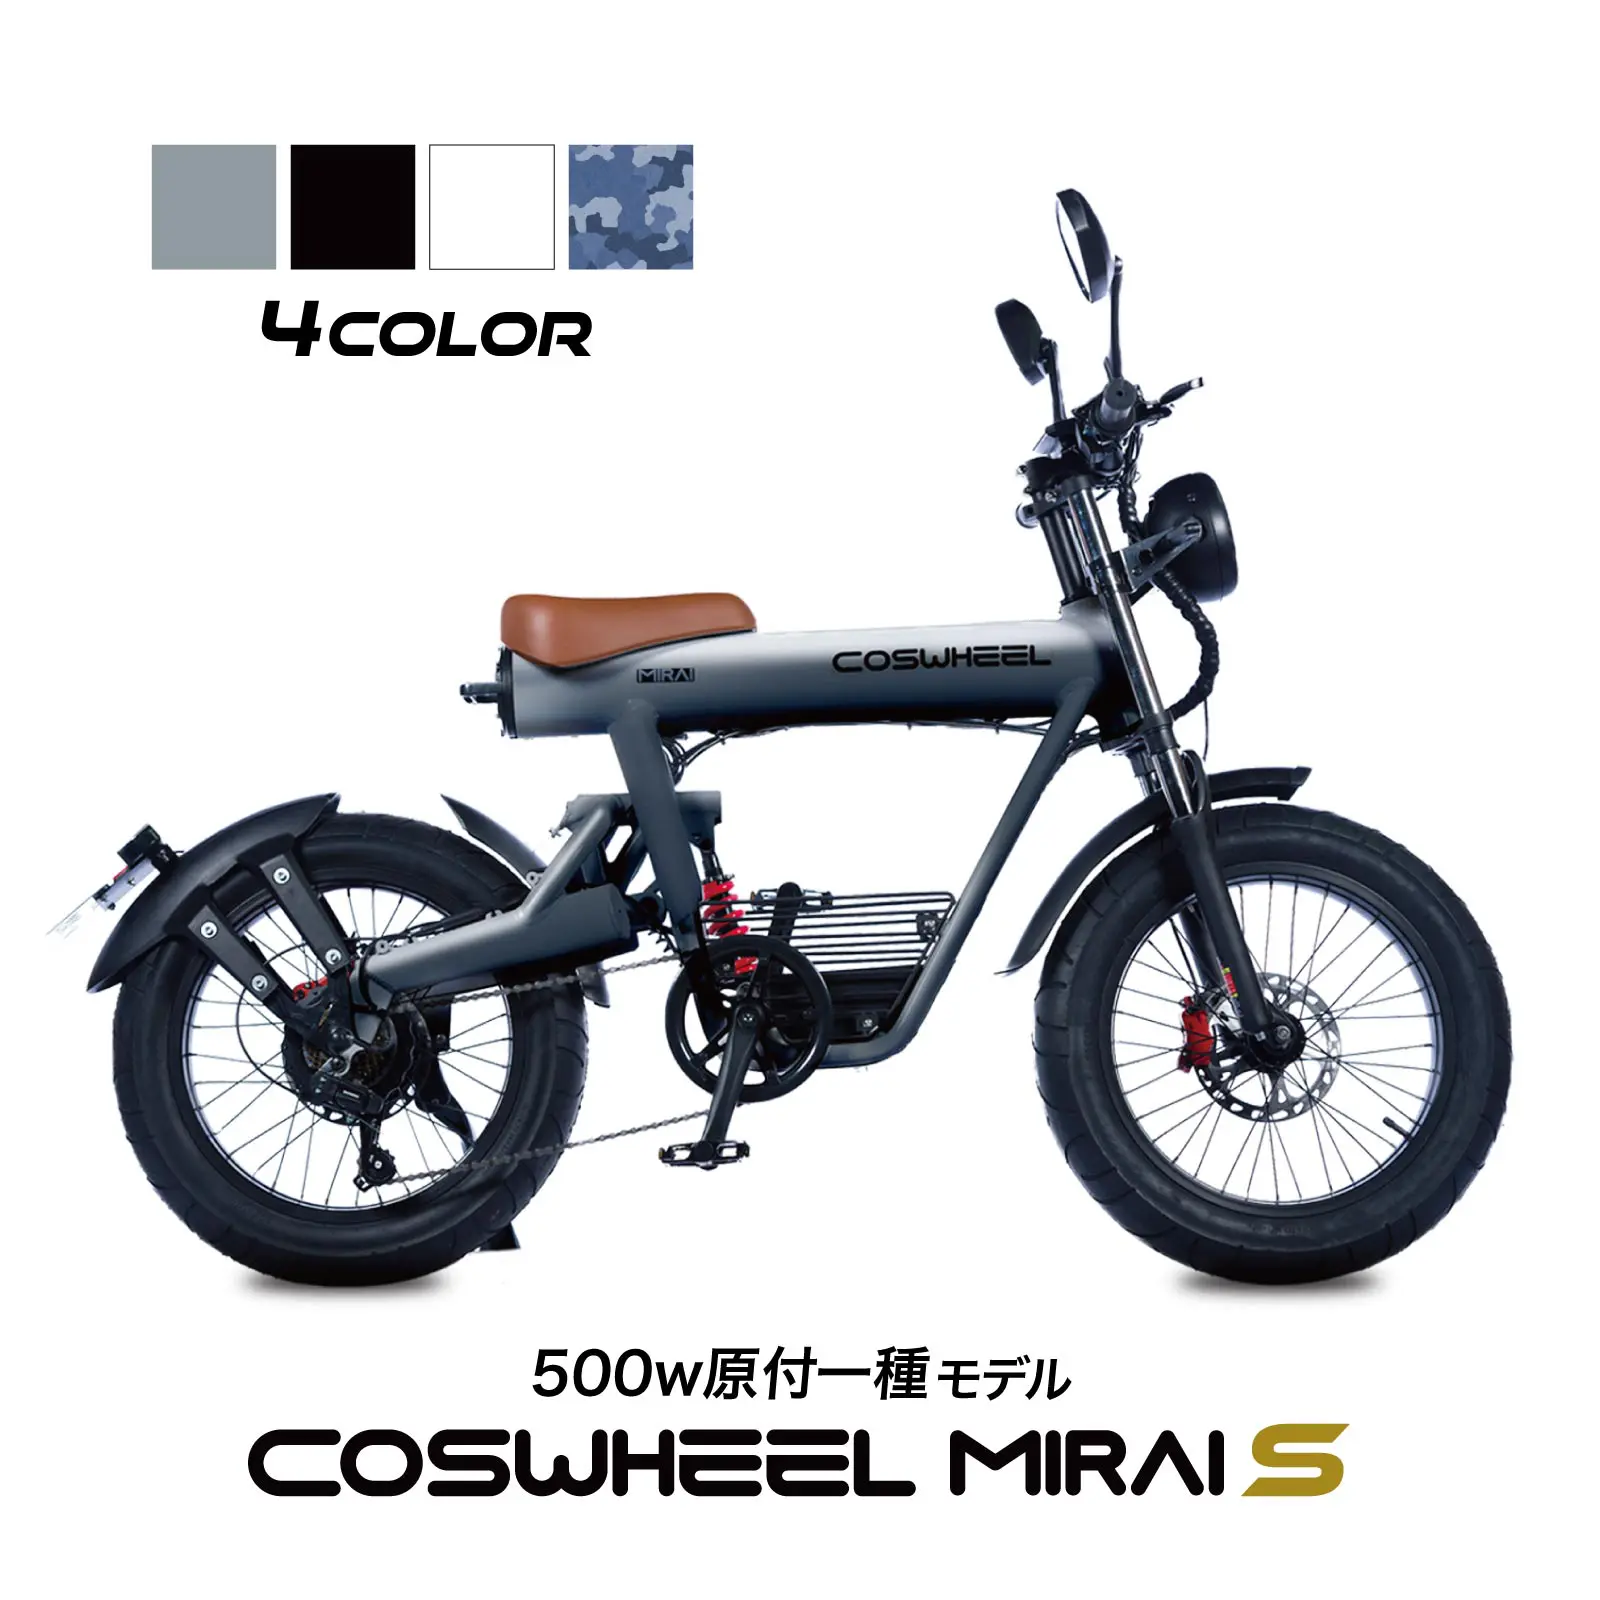 COSWHEEL MIRAI S 電動バイク 500w 原付一種 モデル 公道走行可能 CCN公式オンラインショップ